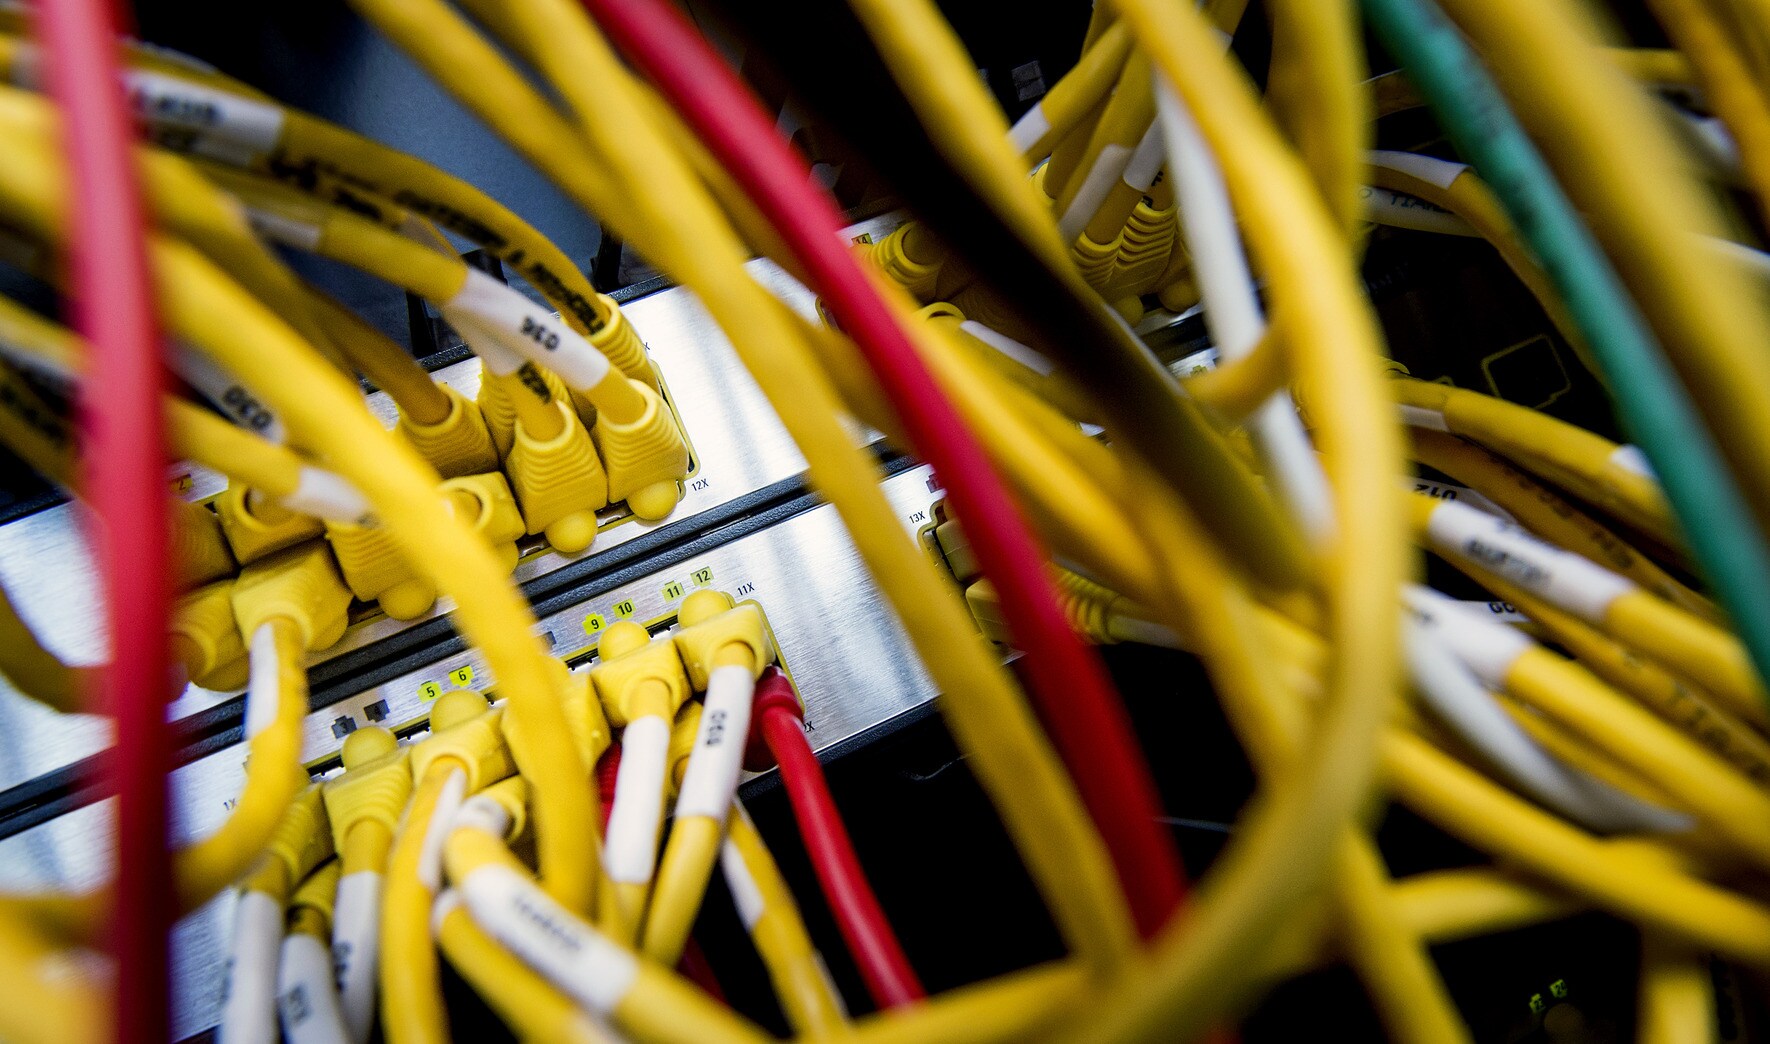 Kabinet houdt vast aan massaal aftappen internetverkeer